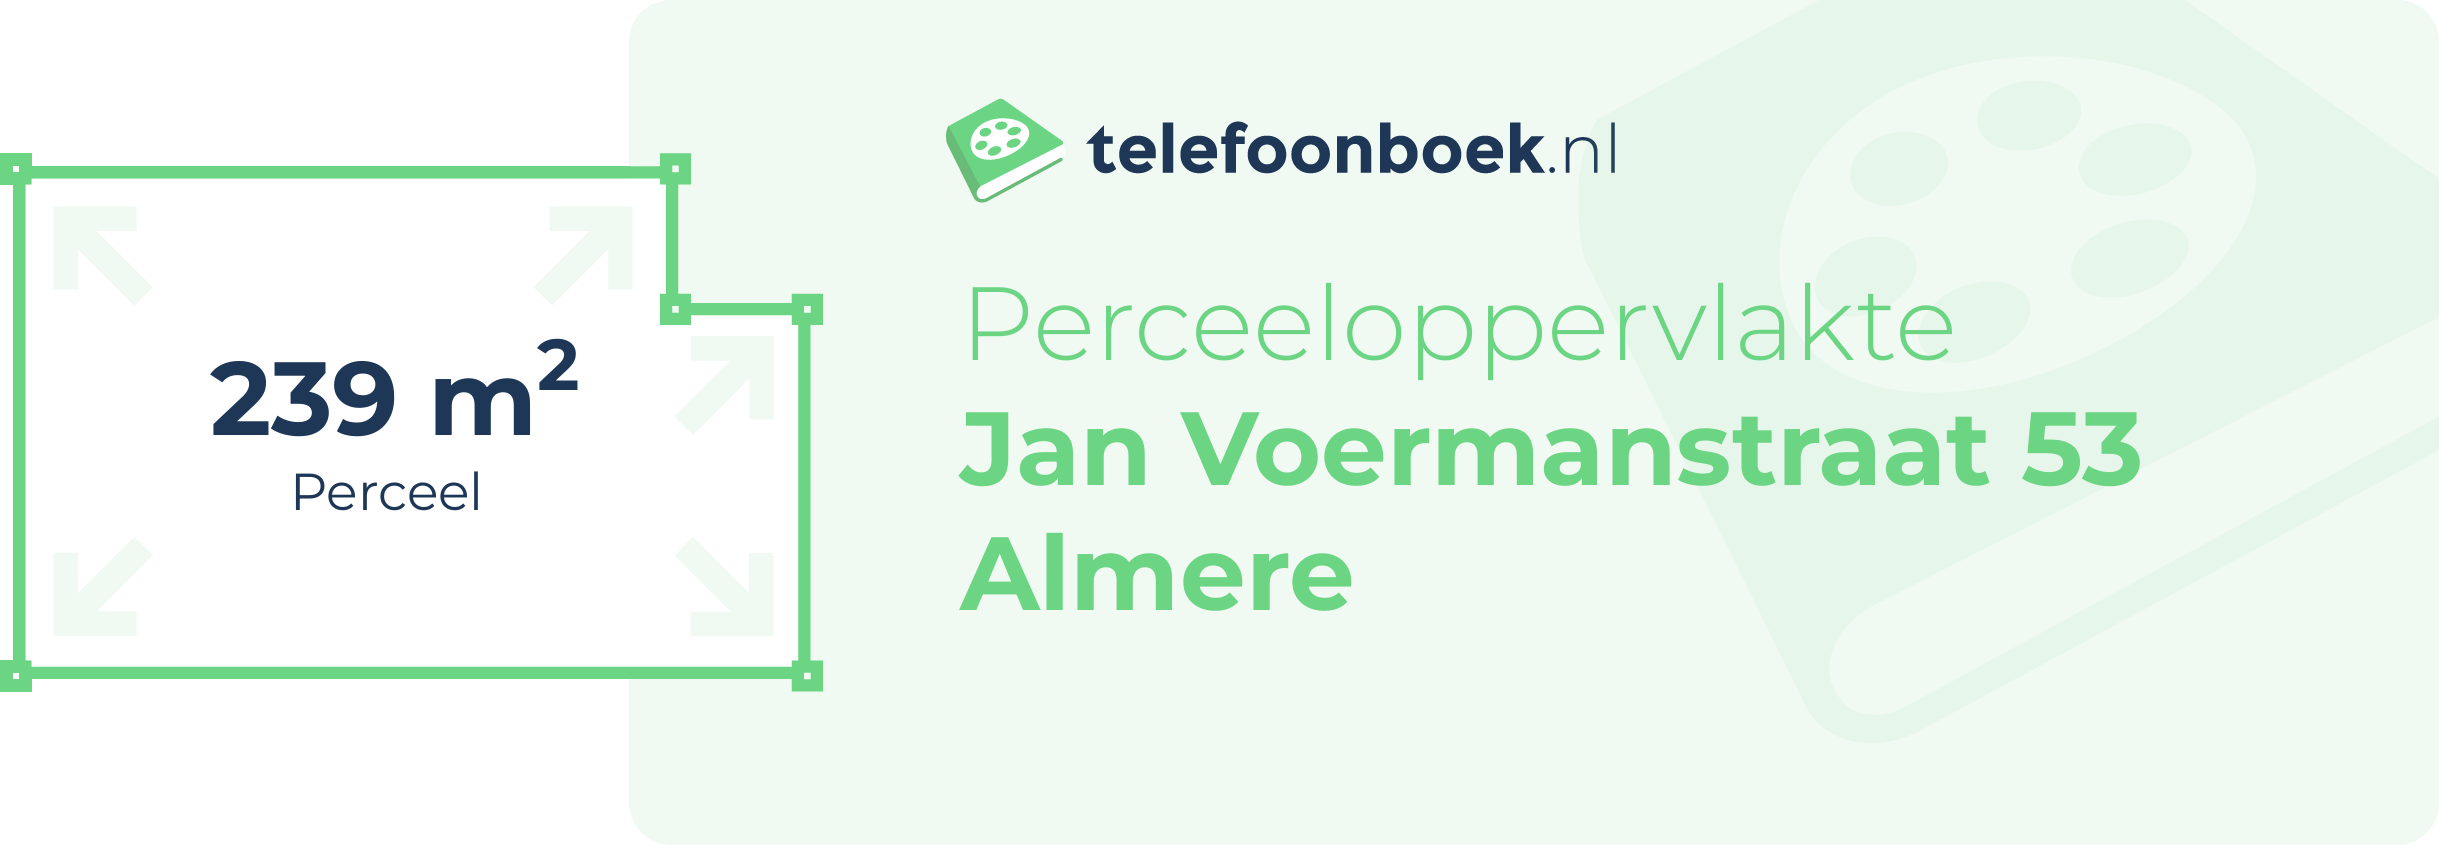 Perceeloppervlakte Jan Voermanstraat 53 Almere